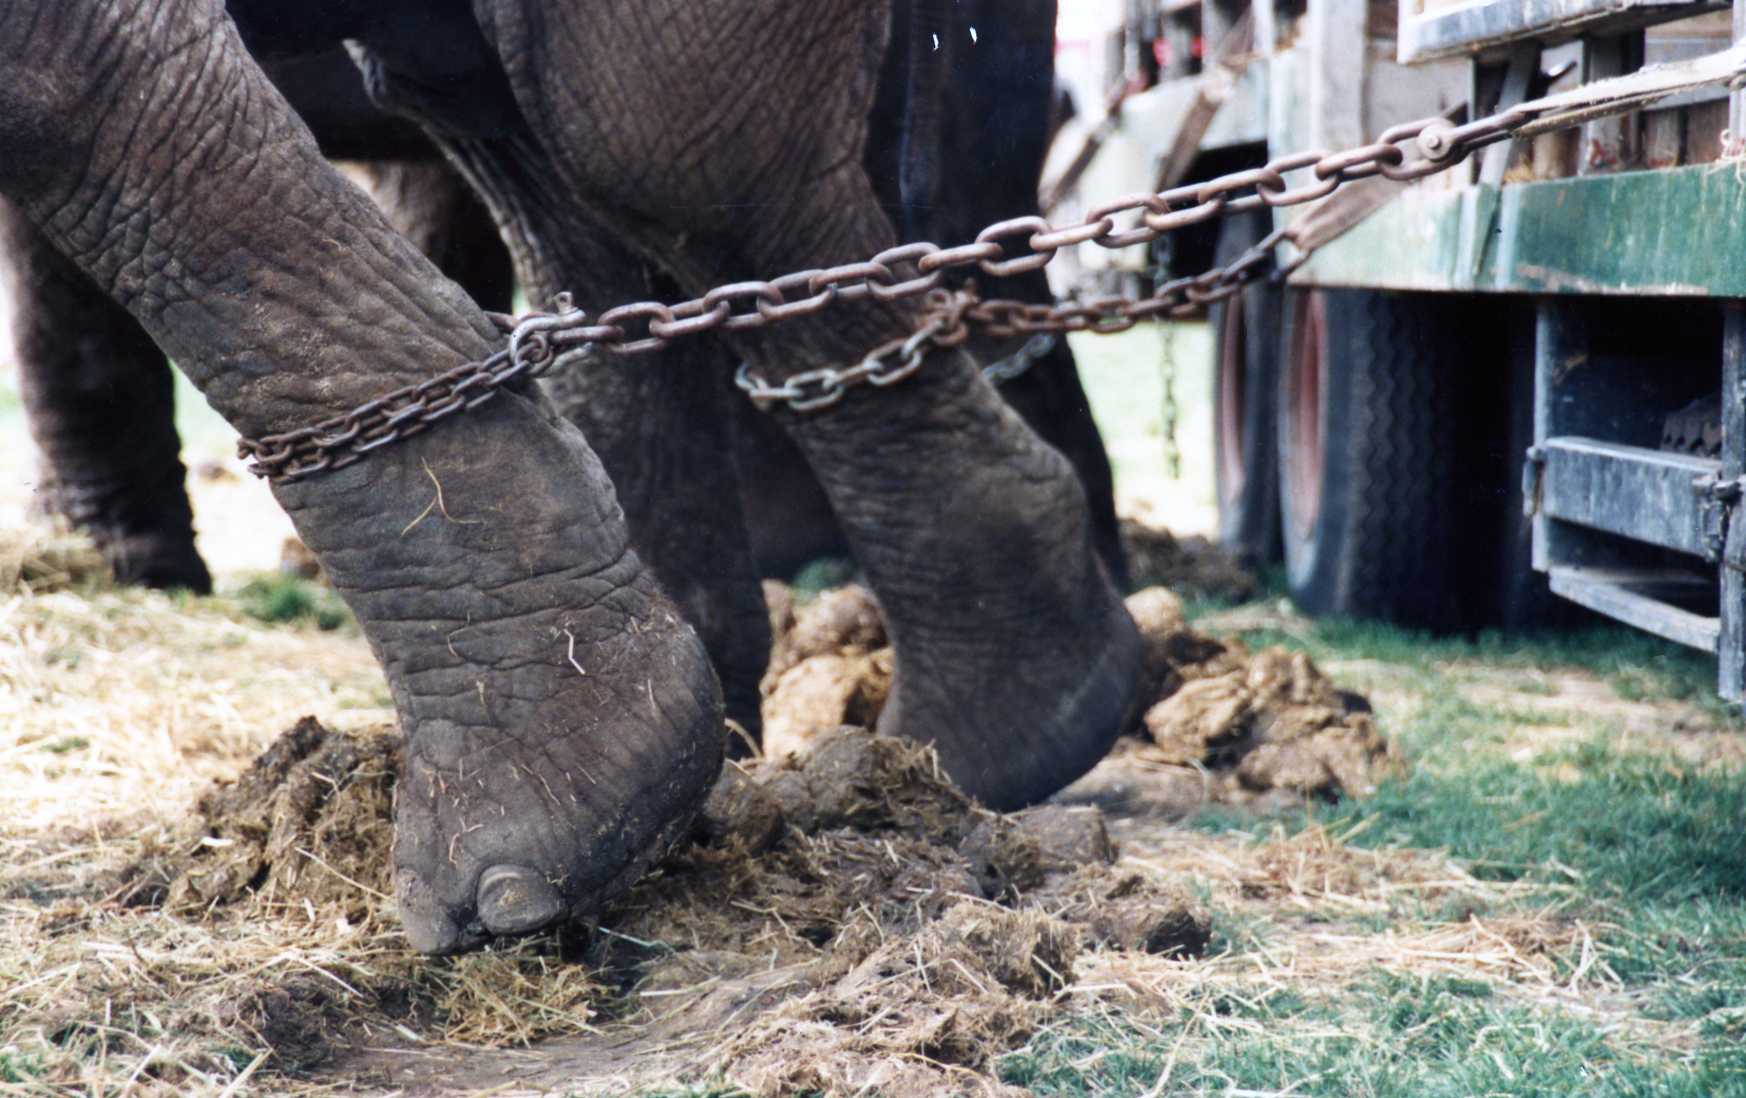 Rumania prohibe presentaciones de animales salvajes en circos